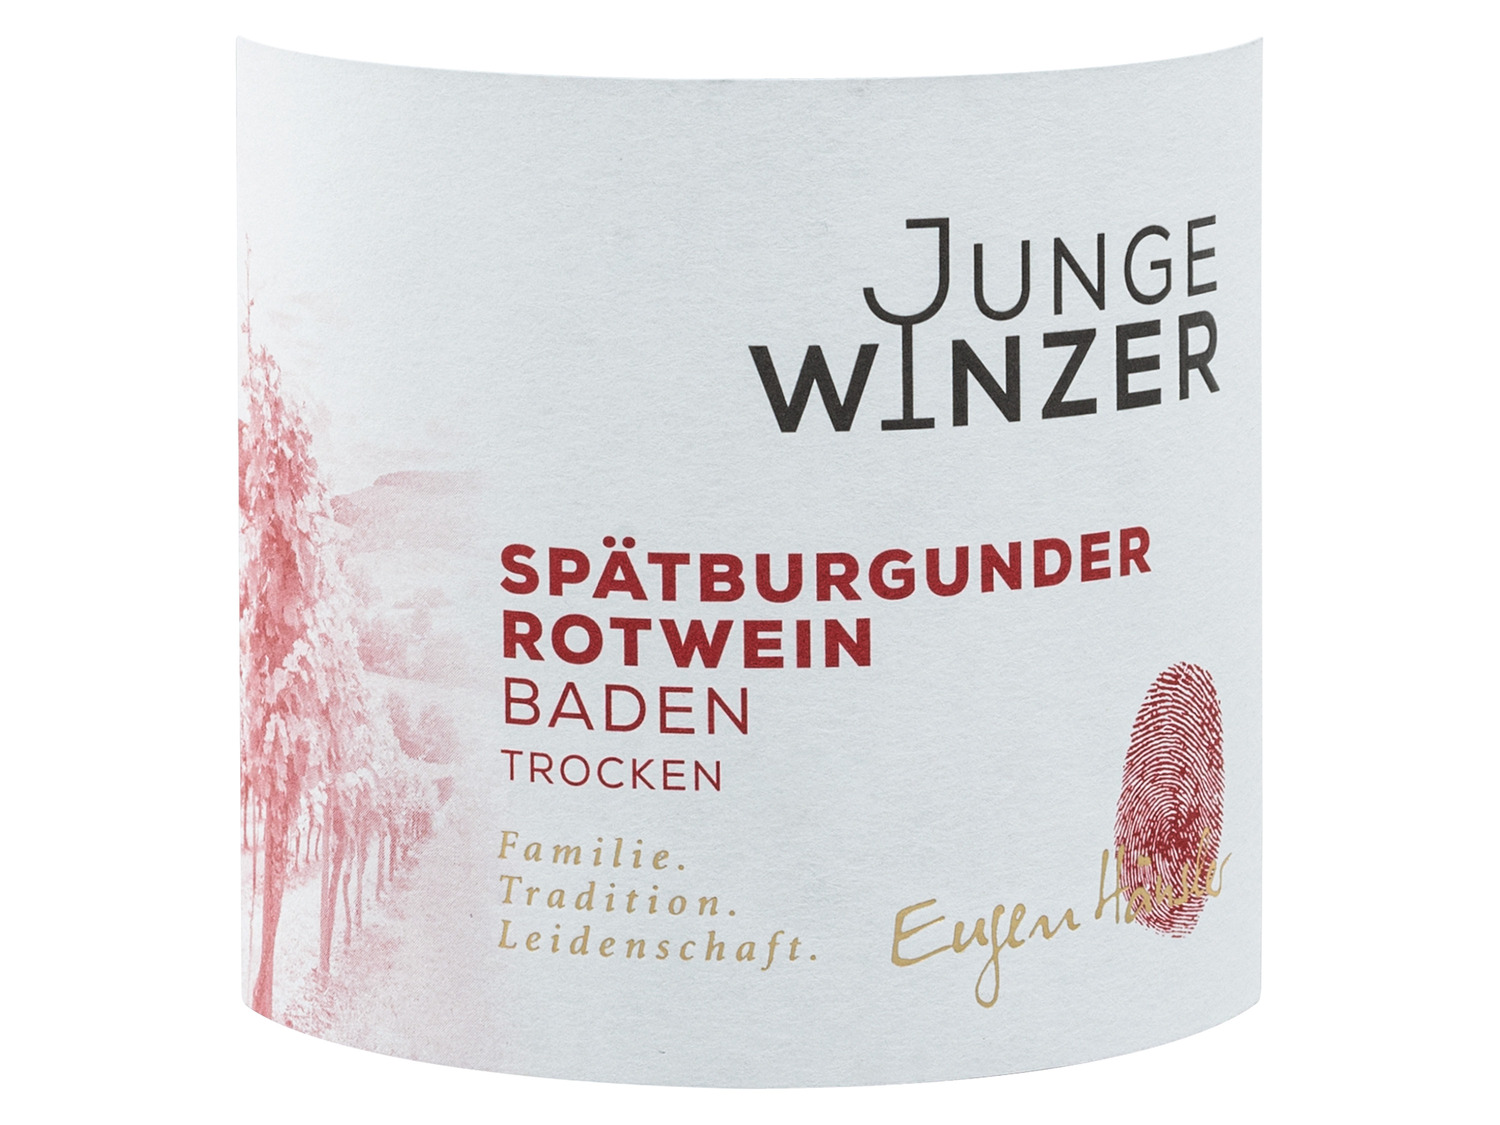 QbA Junge trocken, Baden Winzer … Spätburgunder Rotwein